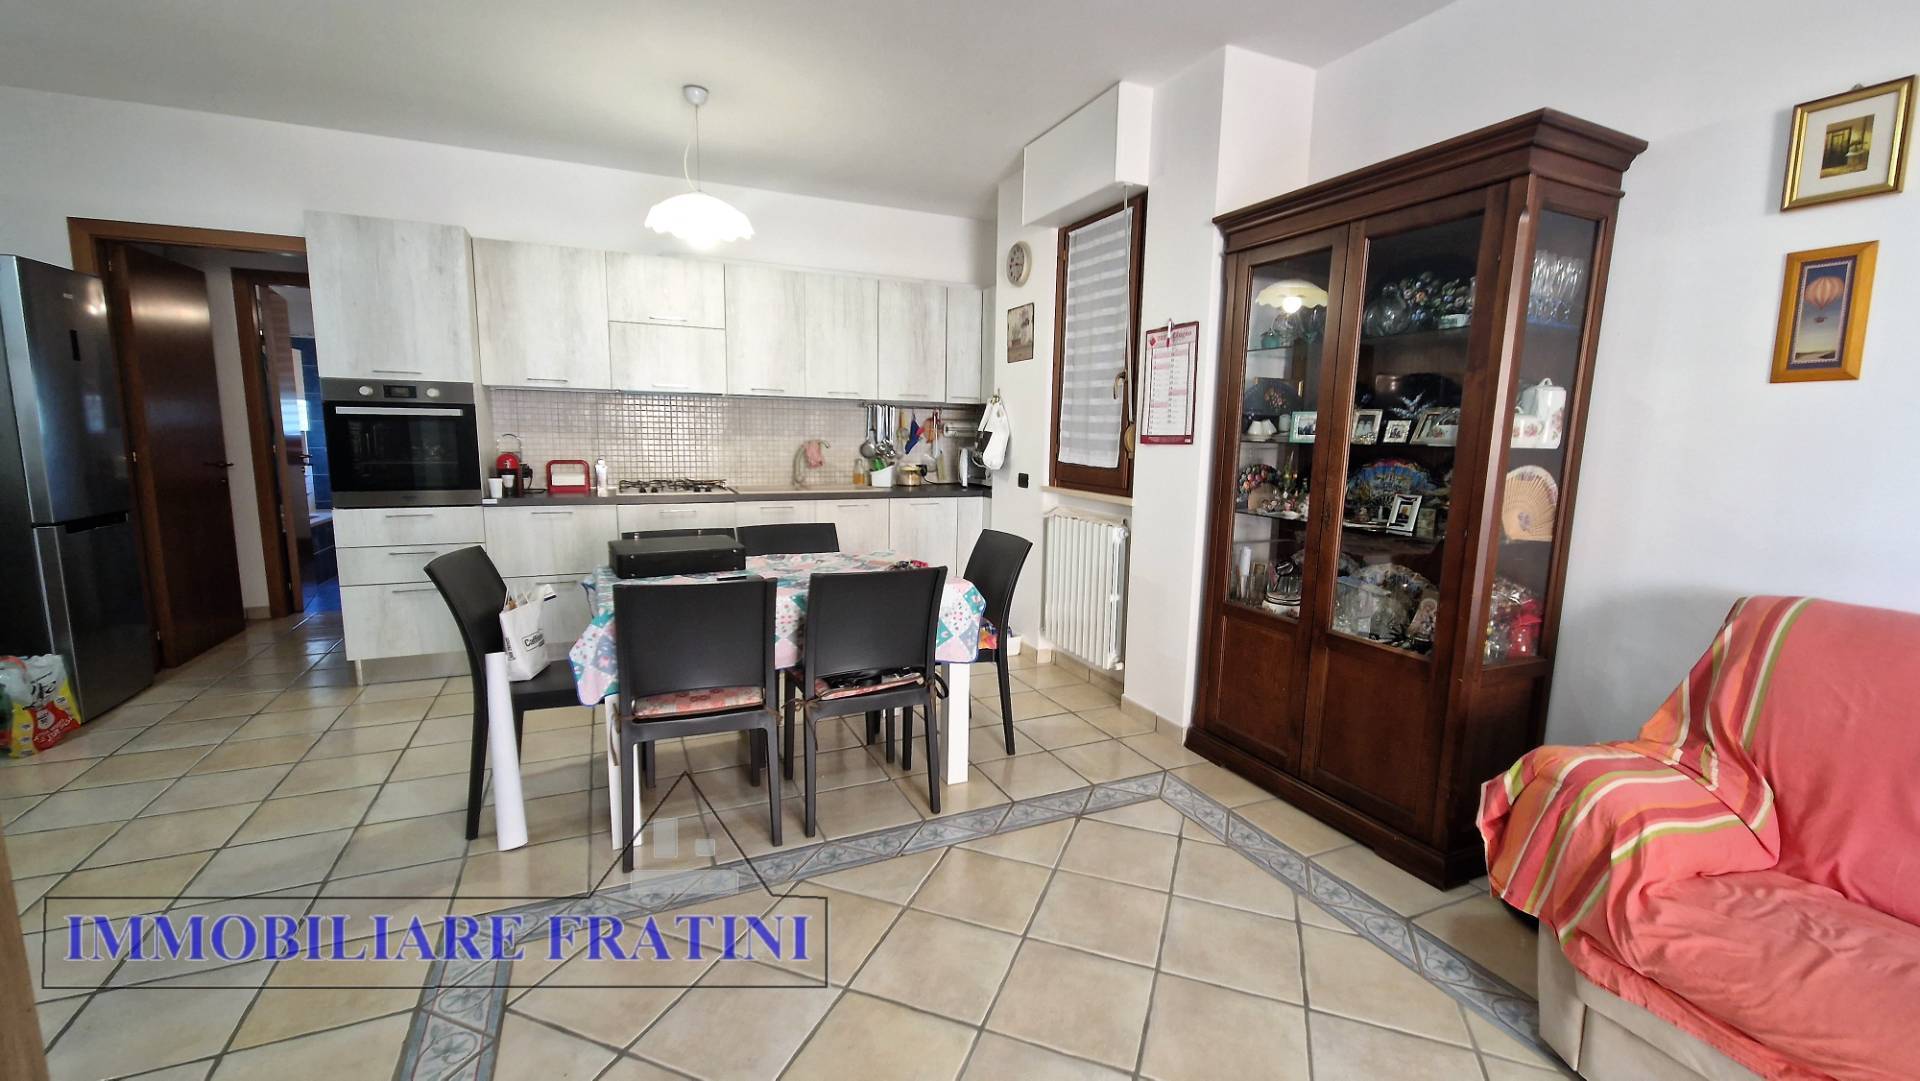 Appartamento in vendita a Maltignano, 5 locali, zona Località: CasellediMaltignano, prezzo € 167.000 | PortaleAgenzieImmobiliari.it